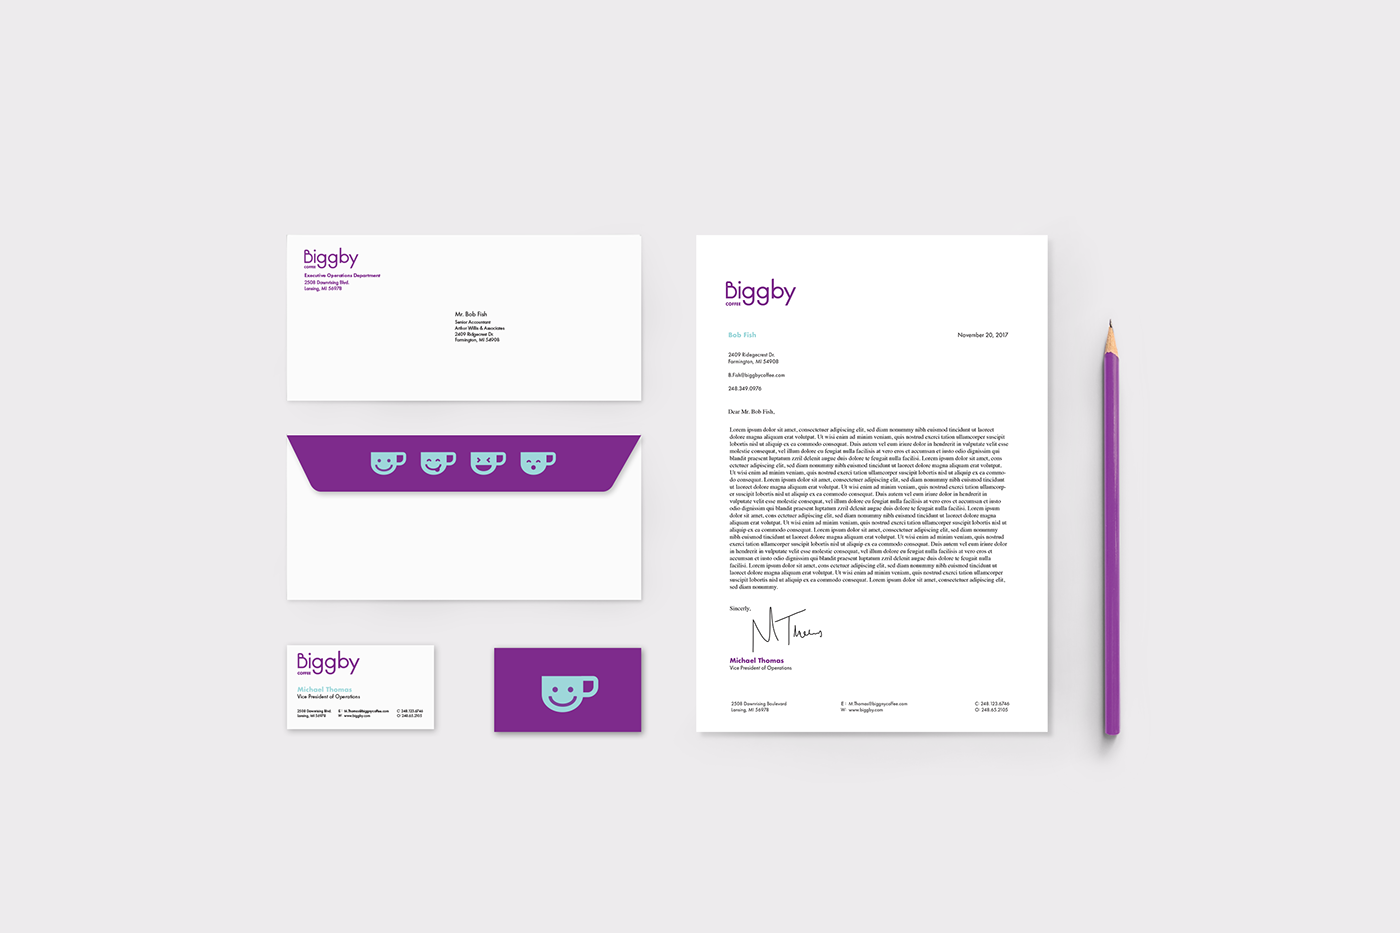 Coffee Biggby Rebrand Fun app design Web Design  color ad campaign Merch